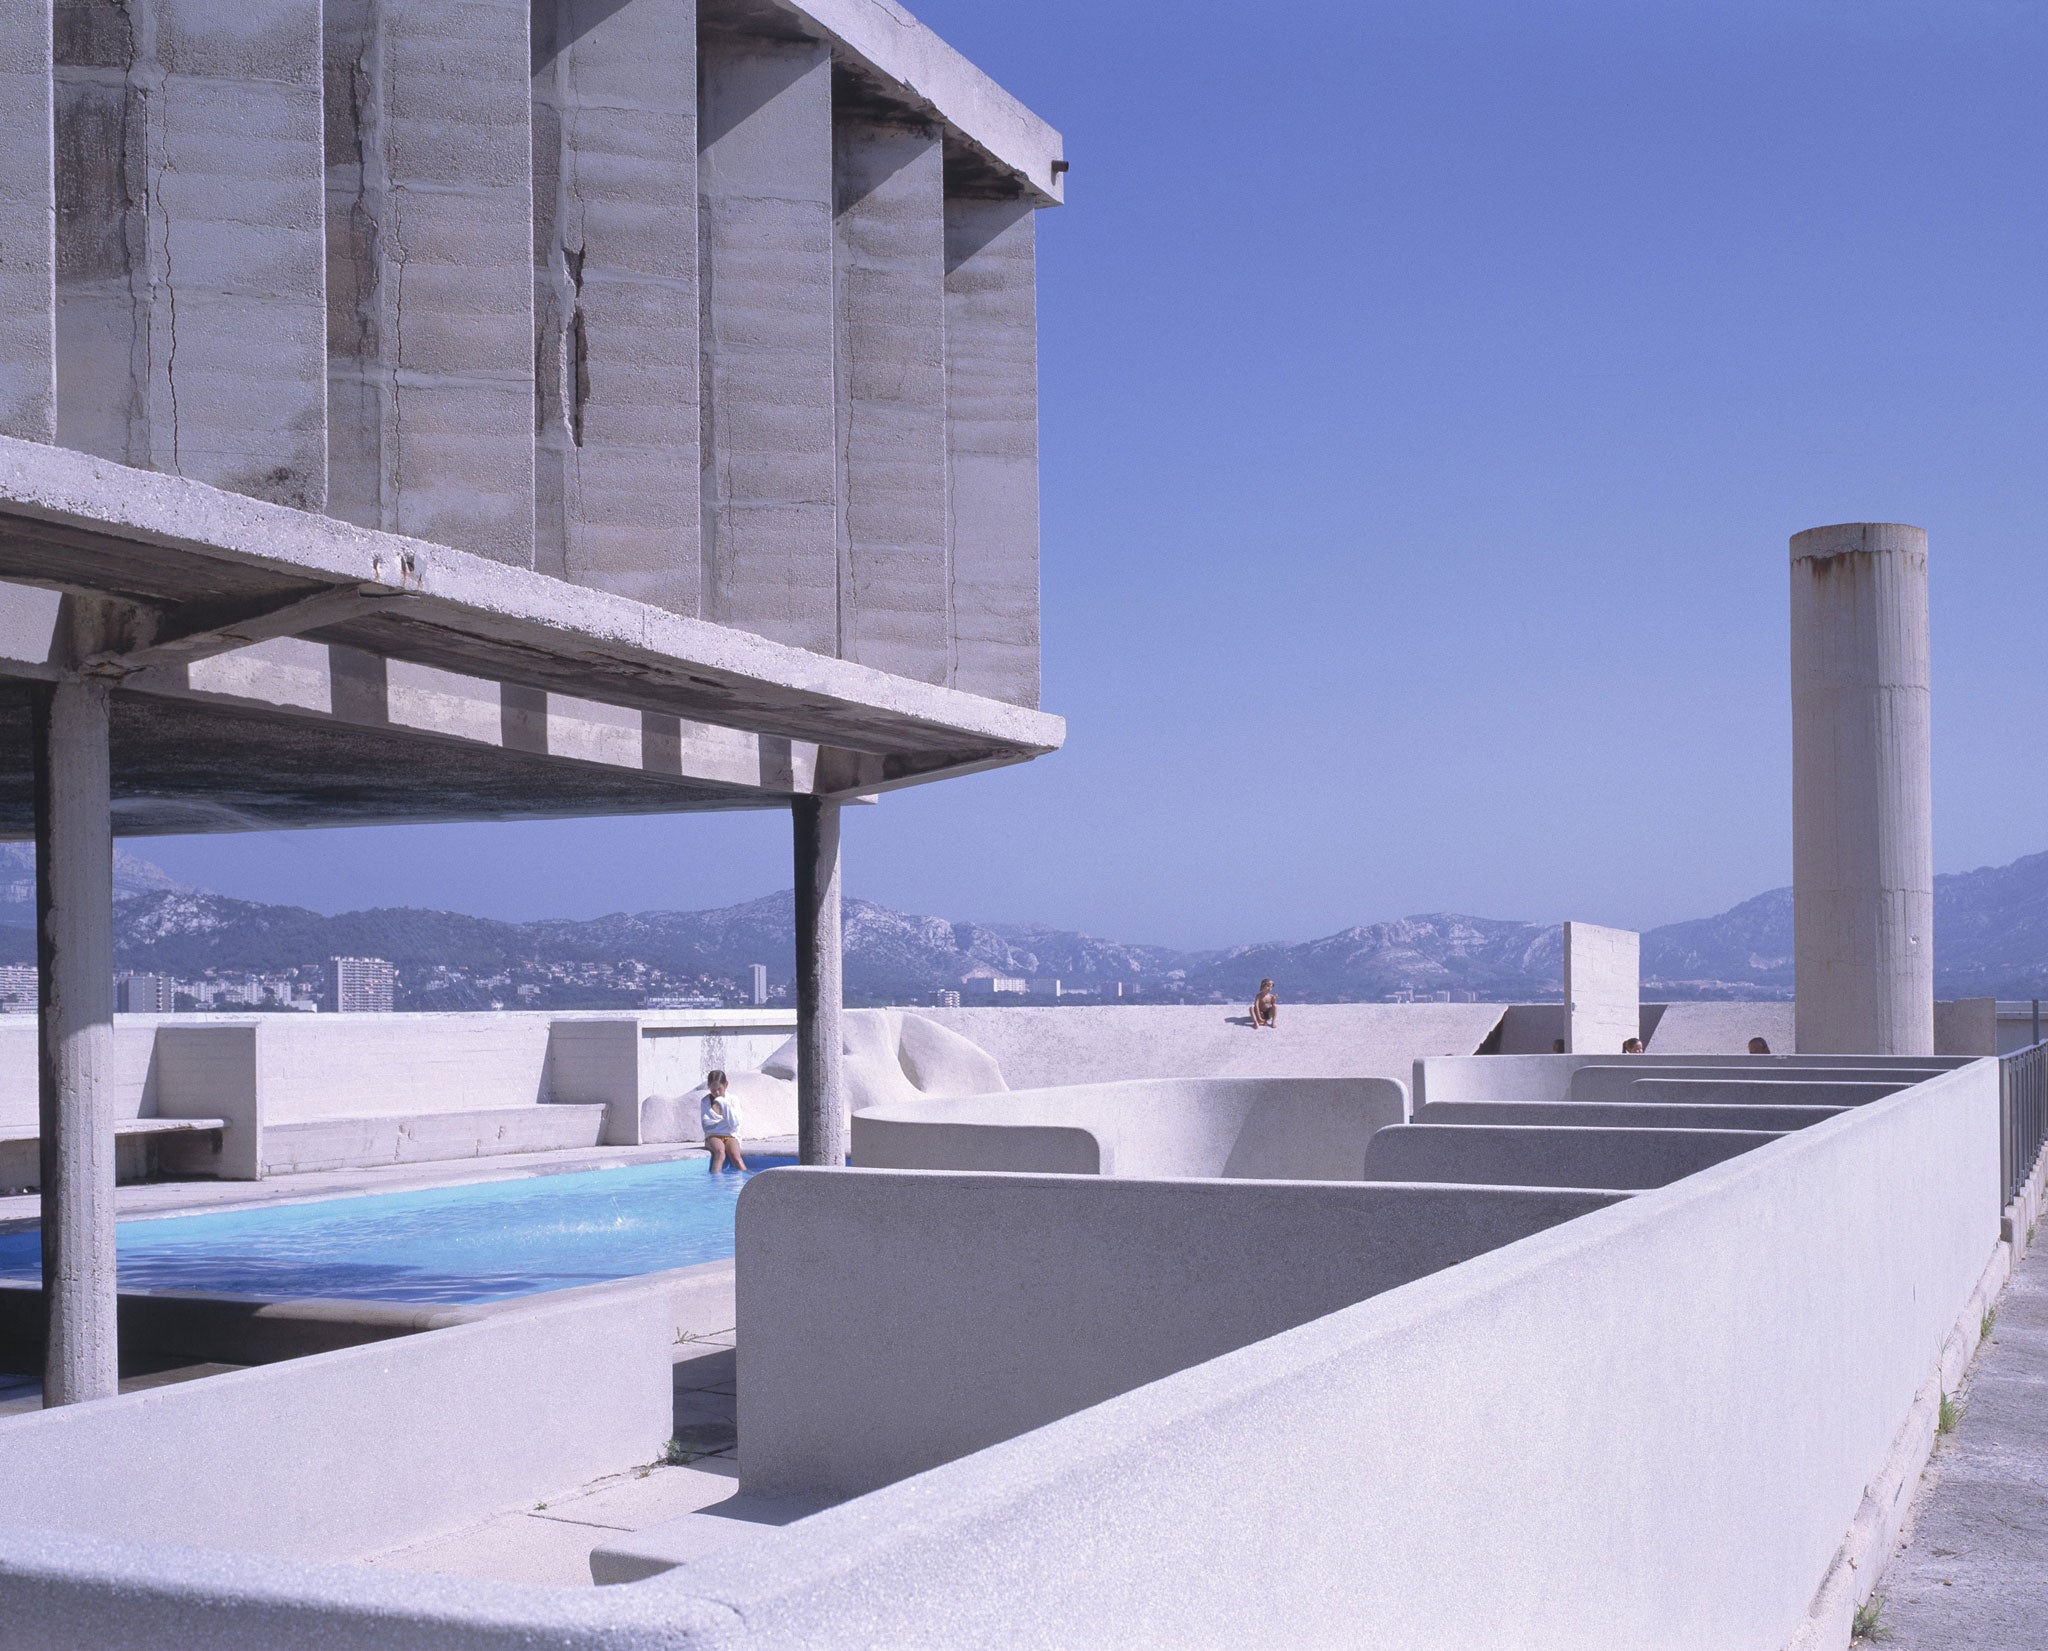 Corbusier's Unité d’Habitation - Meades's home in Marseilles